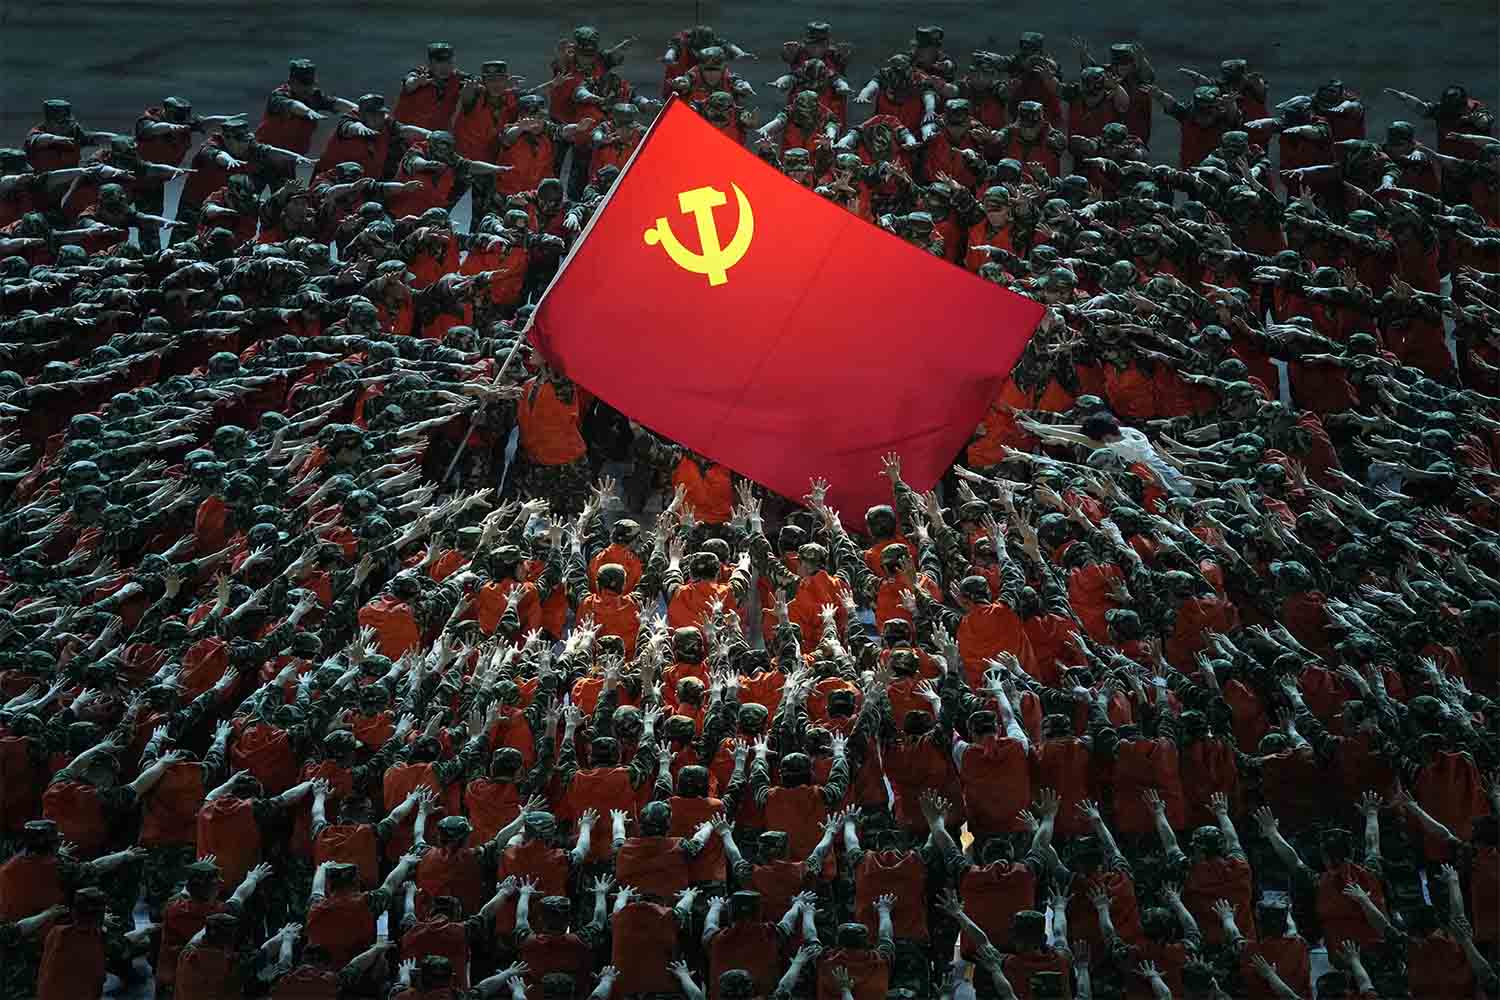 שחקנים הלבושים כעובדי הצלה מתאספים סביב דגל המפלגה הקומוניסטית במהלך מופע חגיגי לקראת יום השנה ה-100 להקמת המפלגה הקומוניסטית הסינית בבייג'ינג. 28 ביוני 2021 (צילום: AP Photo/Ng Han Guan)